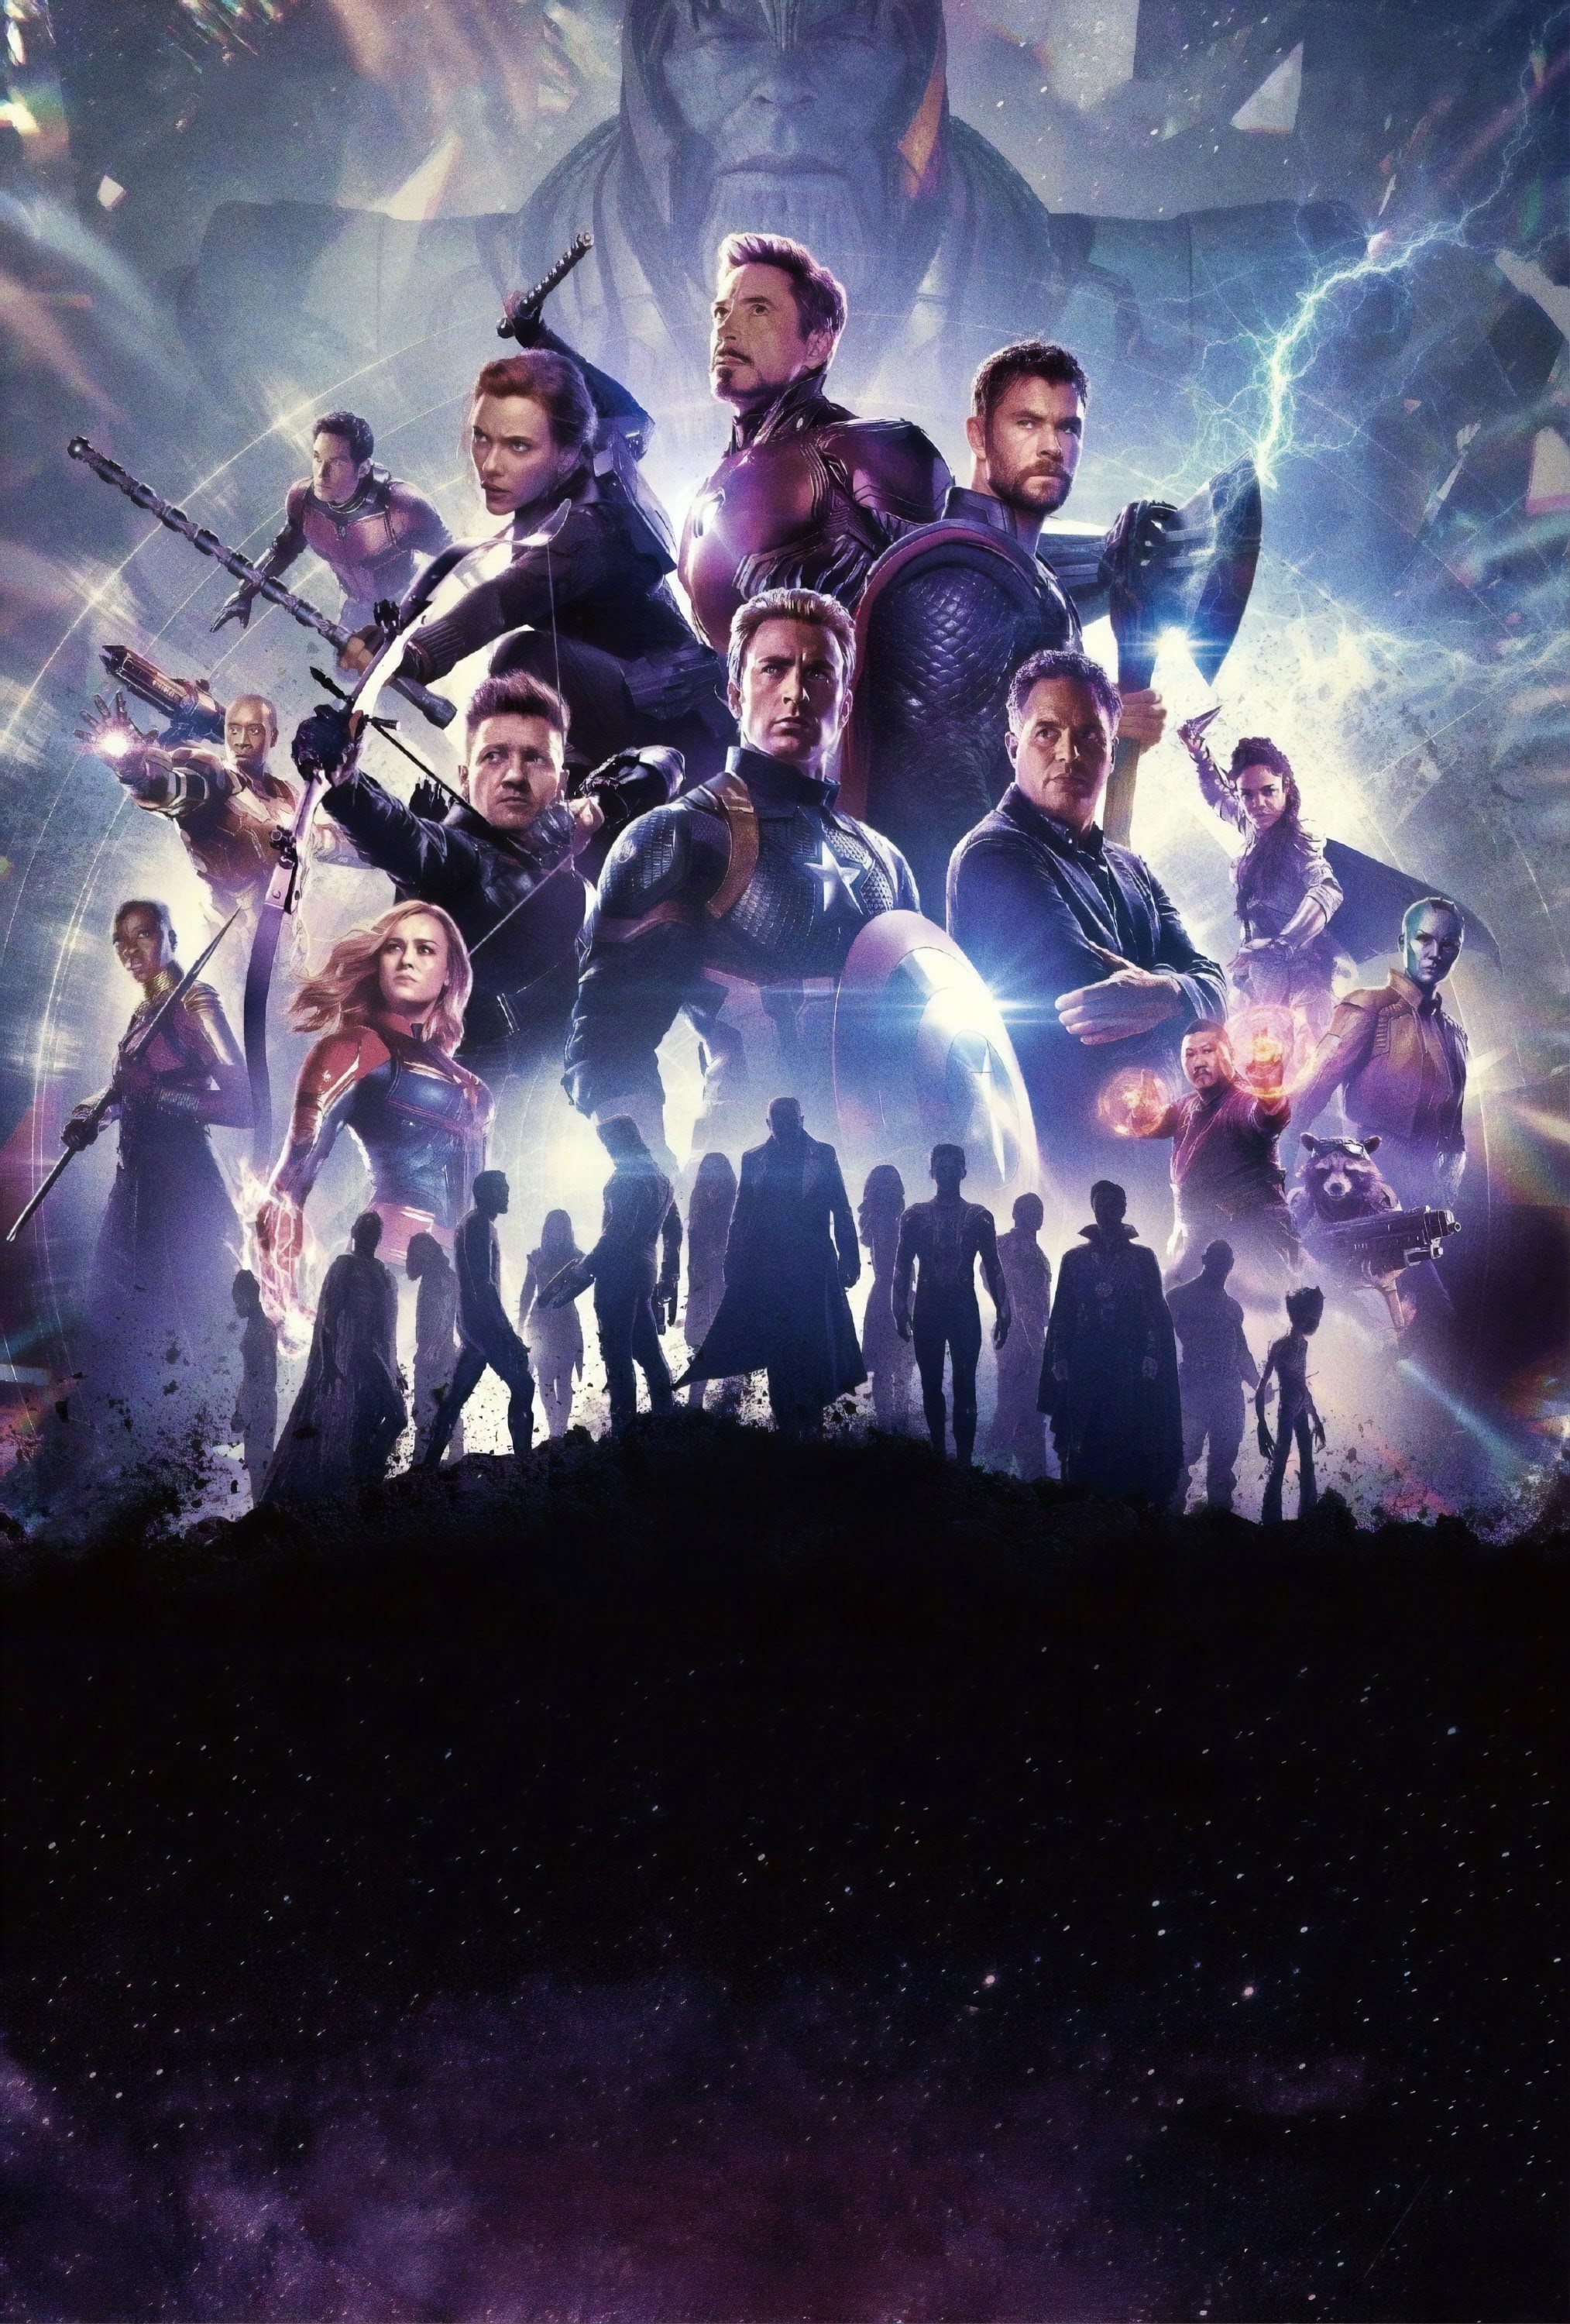 Avengers Endgame Textless Poster マーベルのヒーロー大集合映画のクライマックス アベンジャーズ エンドゲーム の海外版ポスターに 映画のタイトルや出演者の名前の文字を配置する前の素のオリジナル アートの原画ポスター Cia Extra